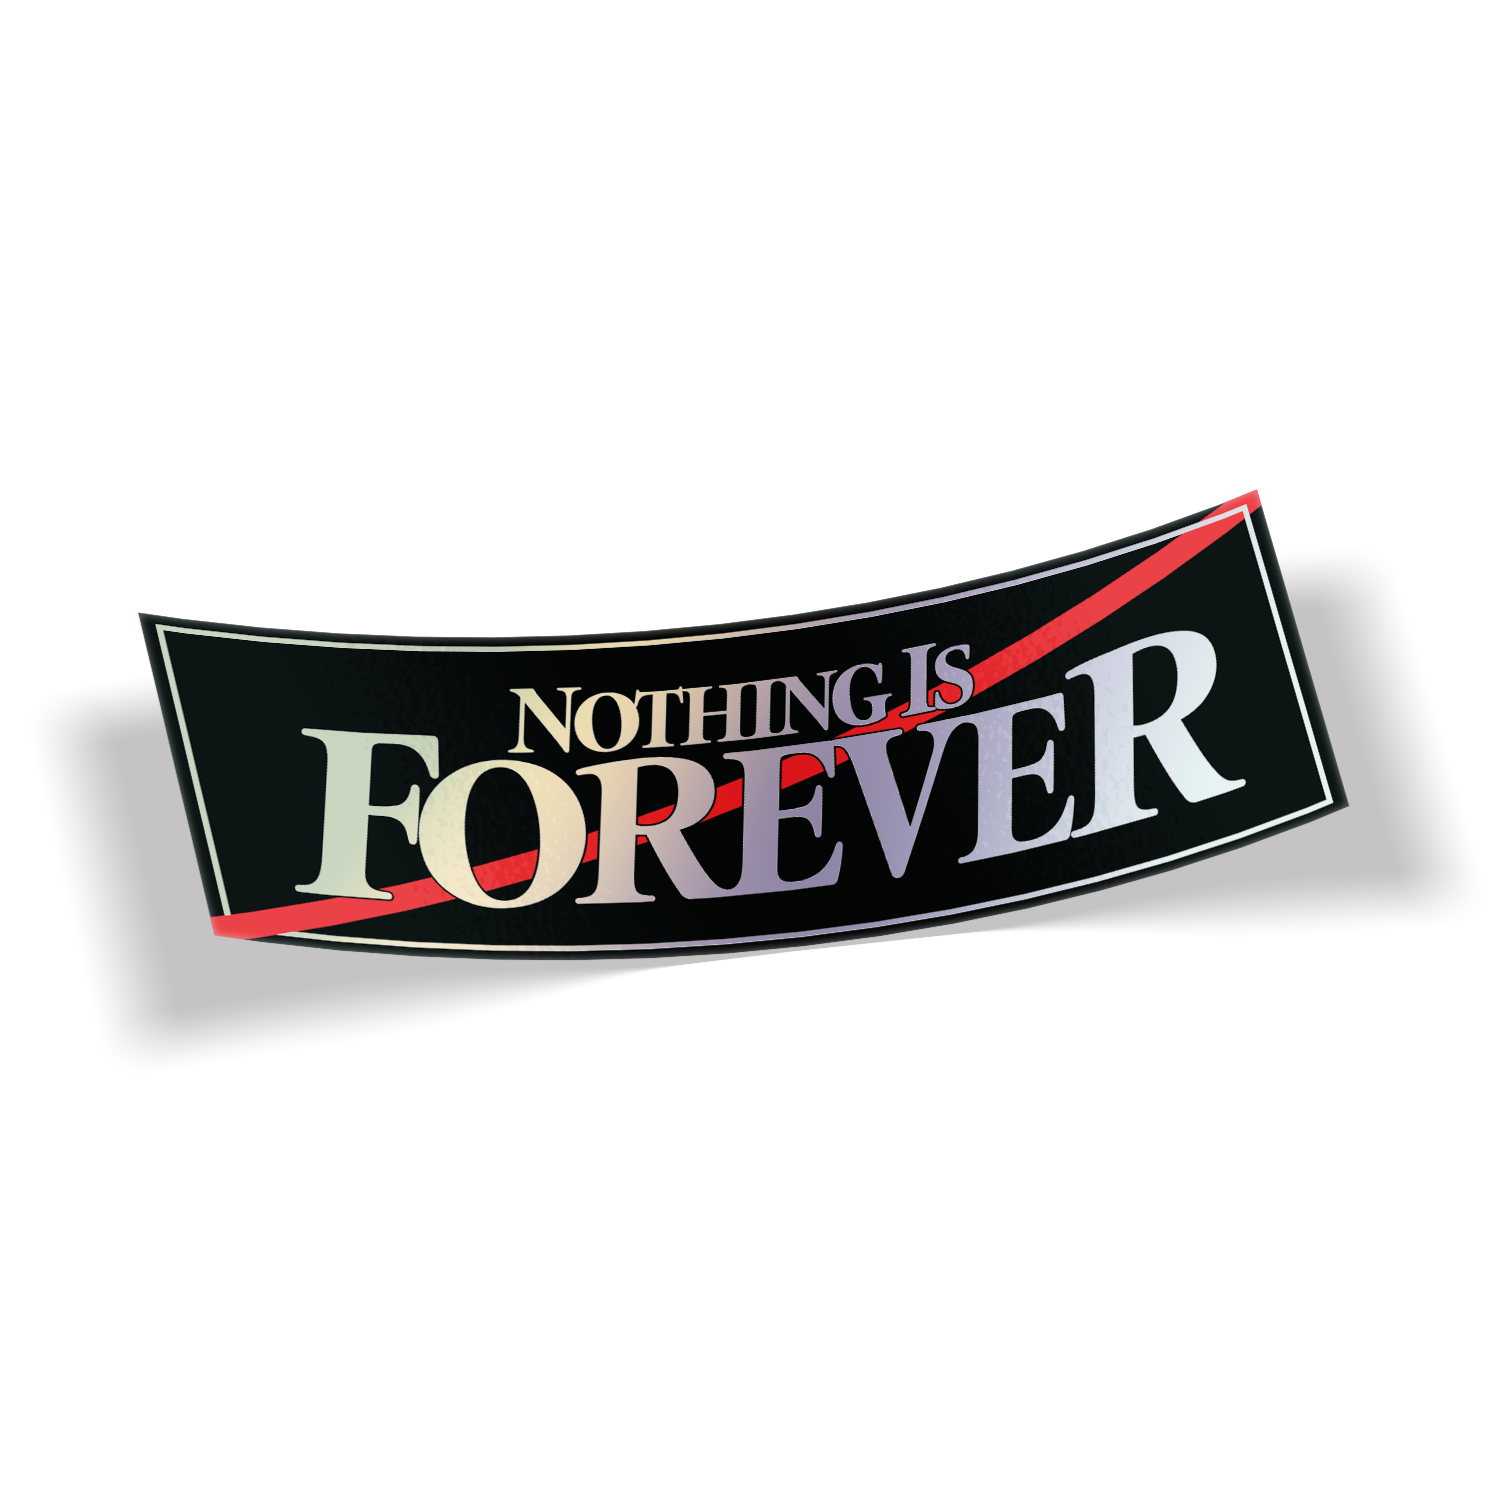 Nothingisforever.png